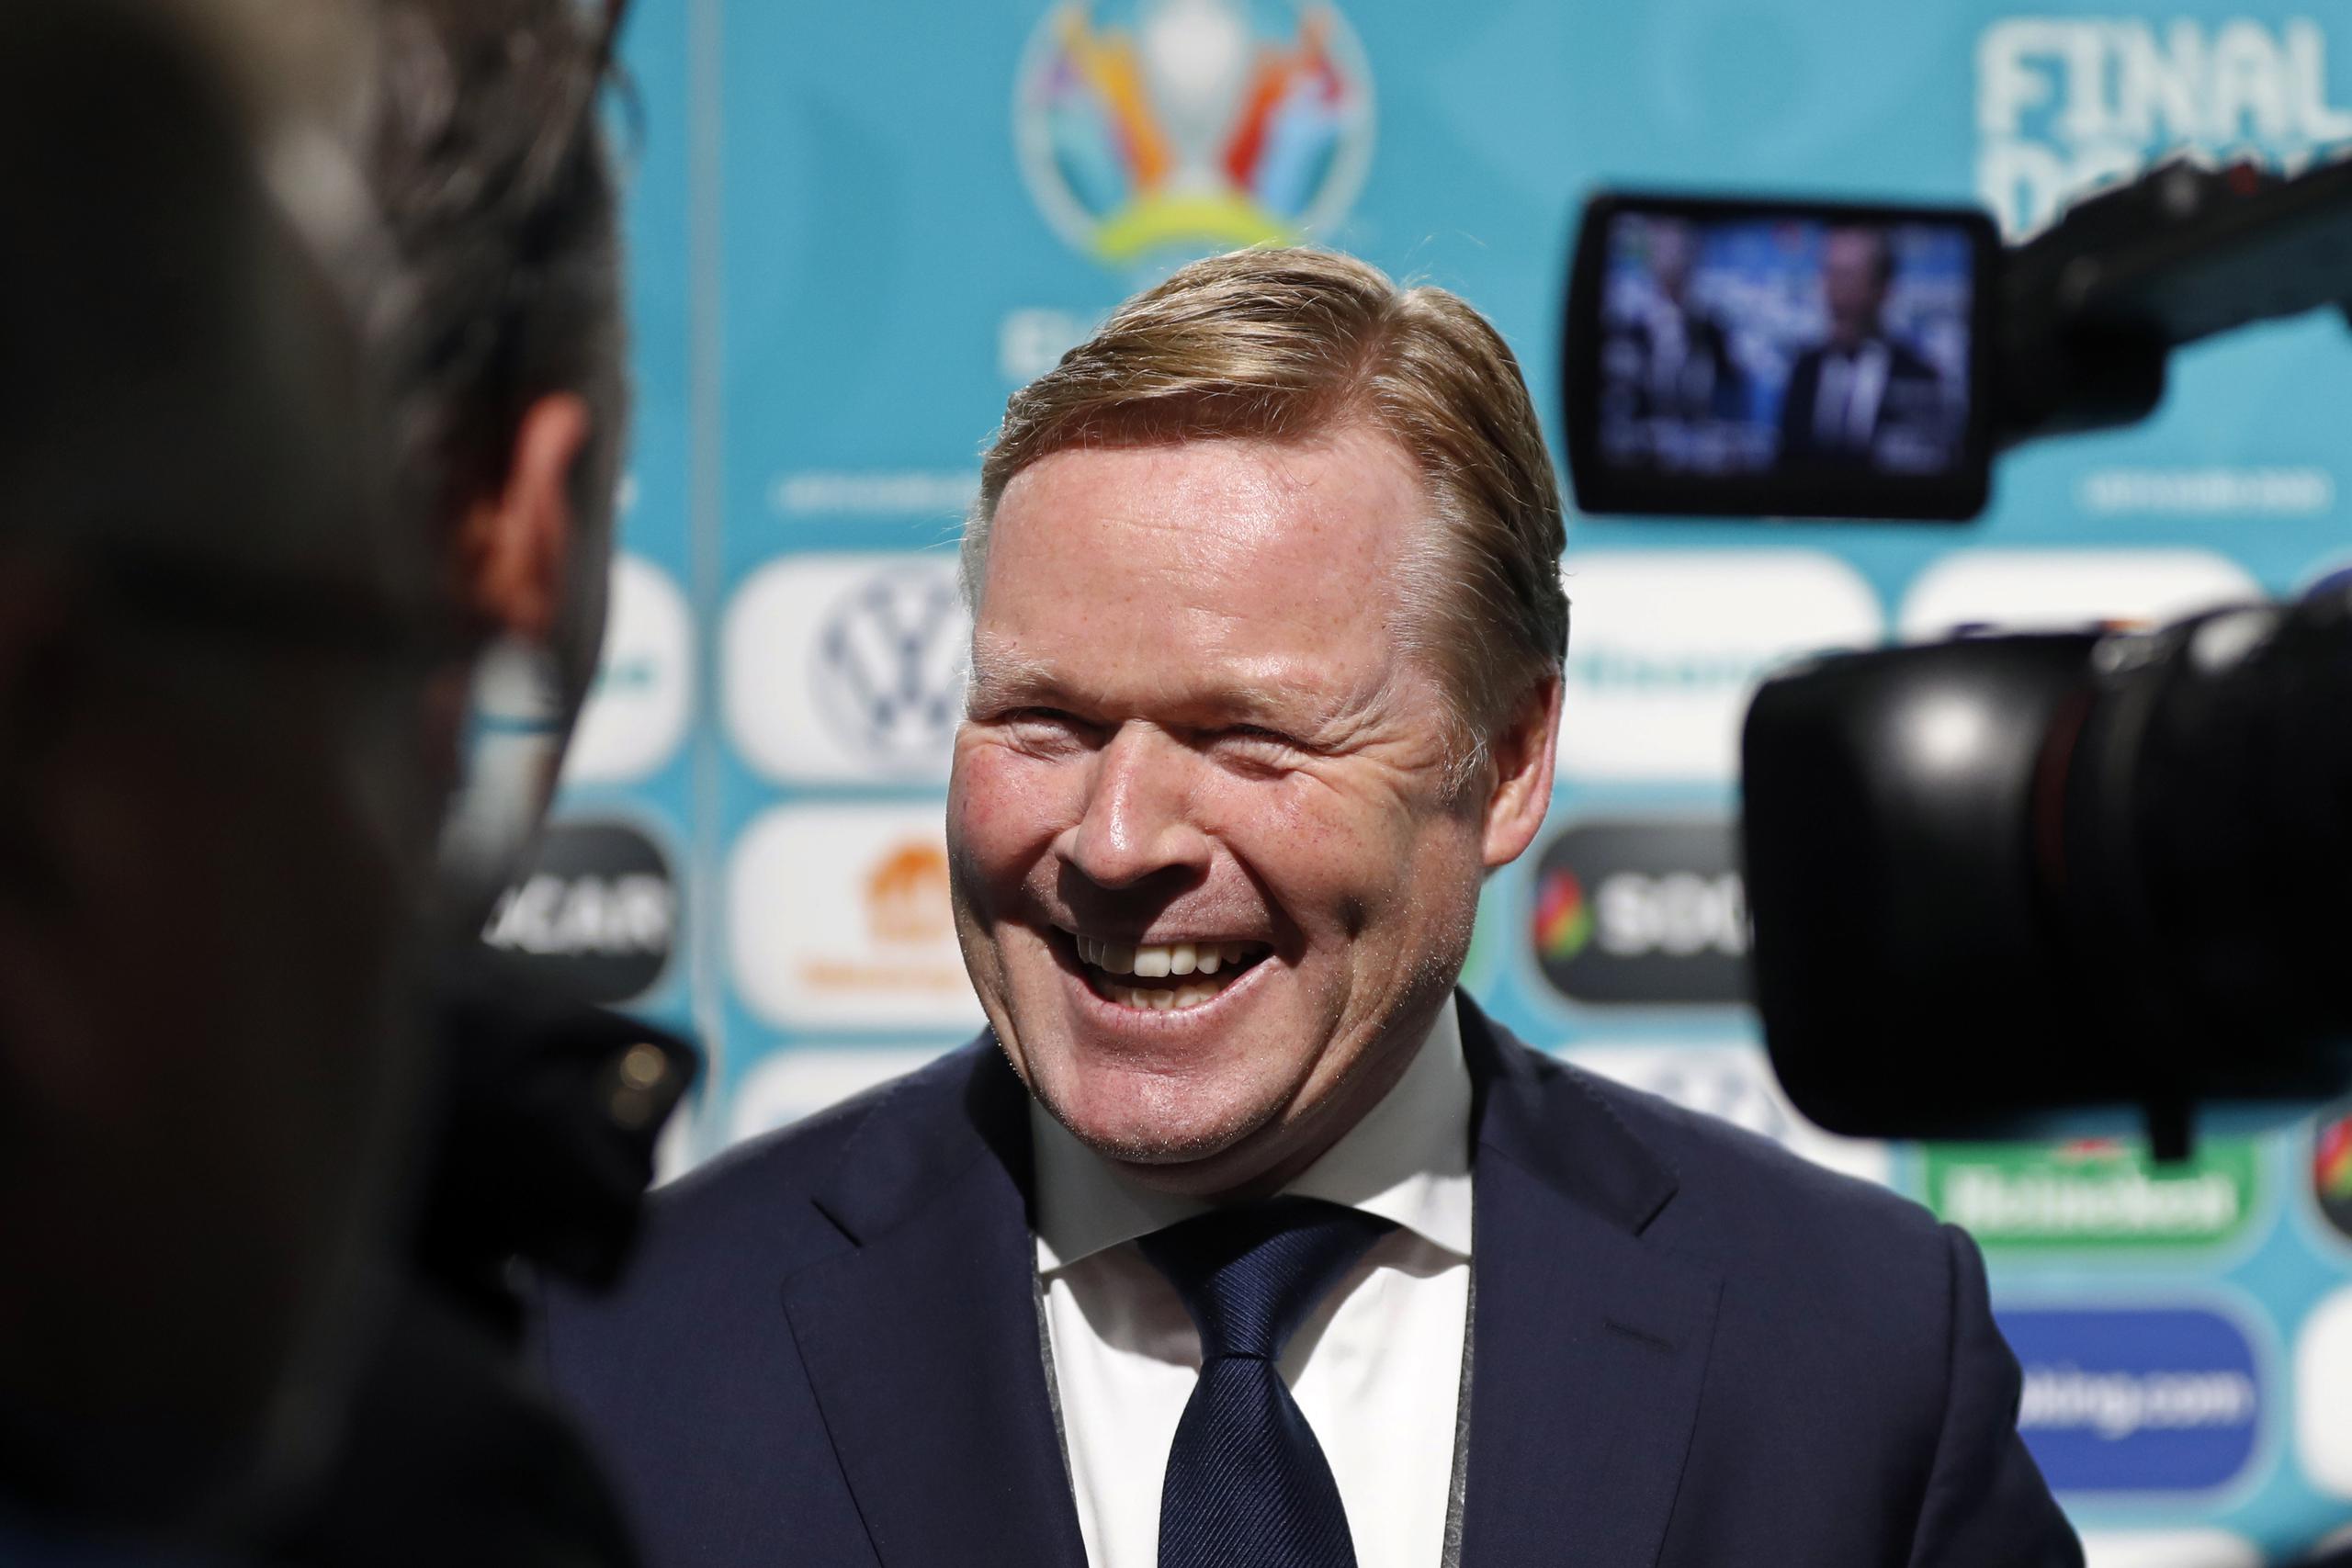 En esta imagen de archivo, tomada el 30 de noviembre de 2019, el entrenador Ronald Koeman sonríe a periodistas tras el sorteo de los emparejamientos para la Eurocopa 2020, en Bucarest, Rumanía. Koeman fue anunciado como nuevo técnico de Barcelona el miércoles.